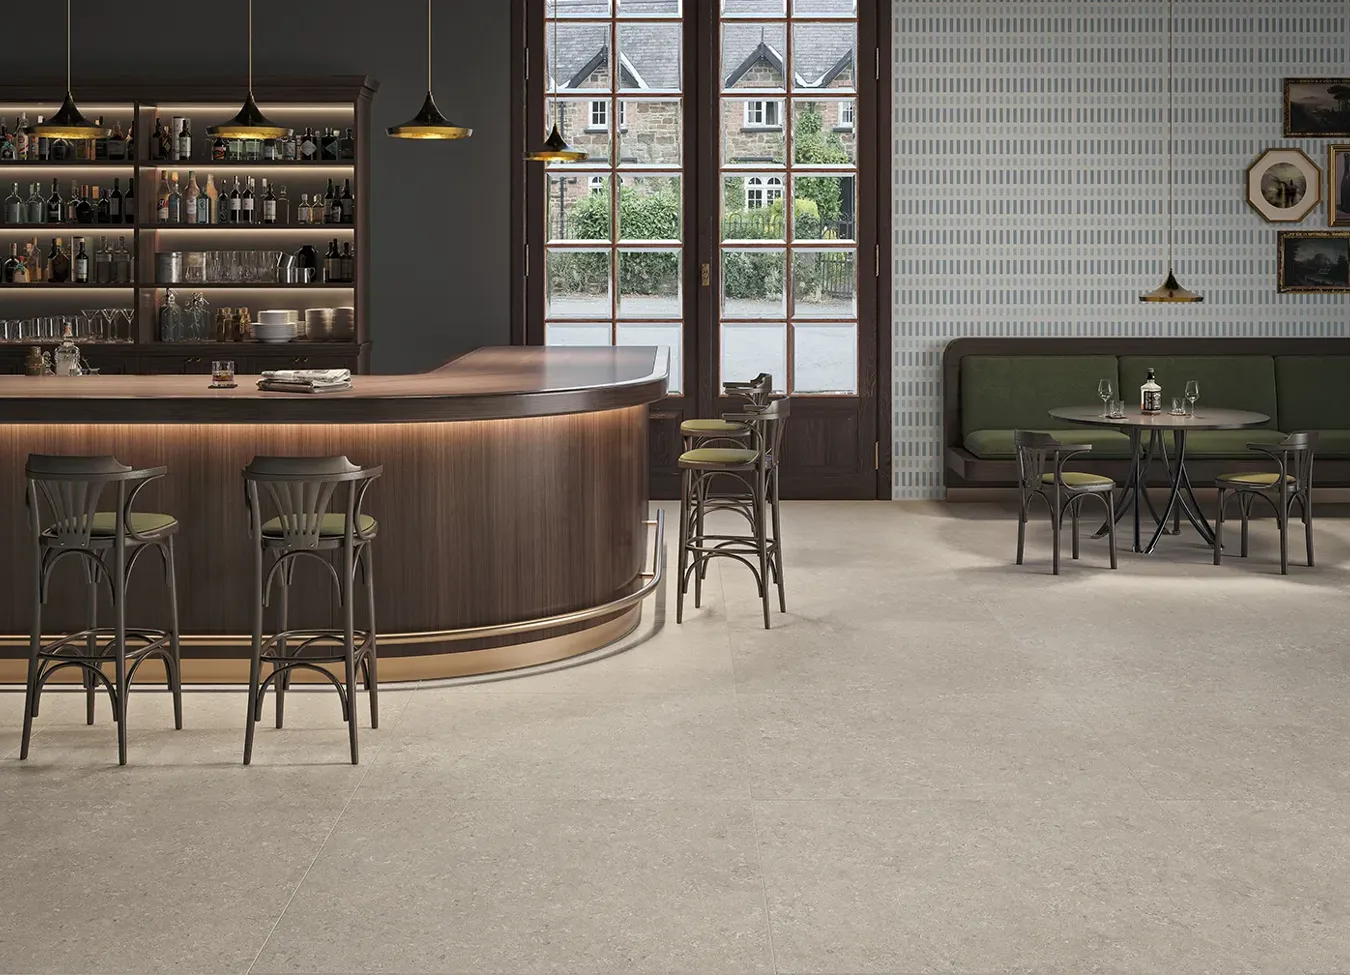 Pavimento in gres porcellanato effetto pietra grigio in un raffinato bar con arredamento in legno.